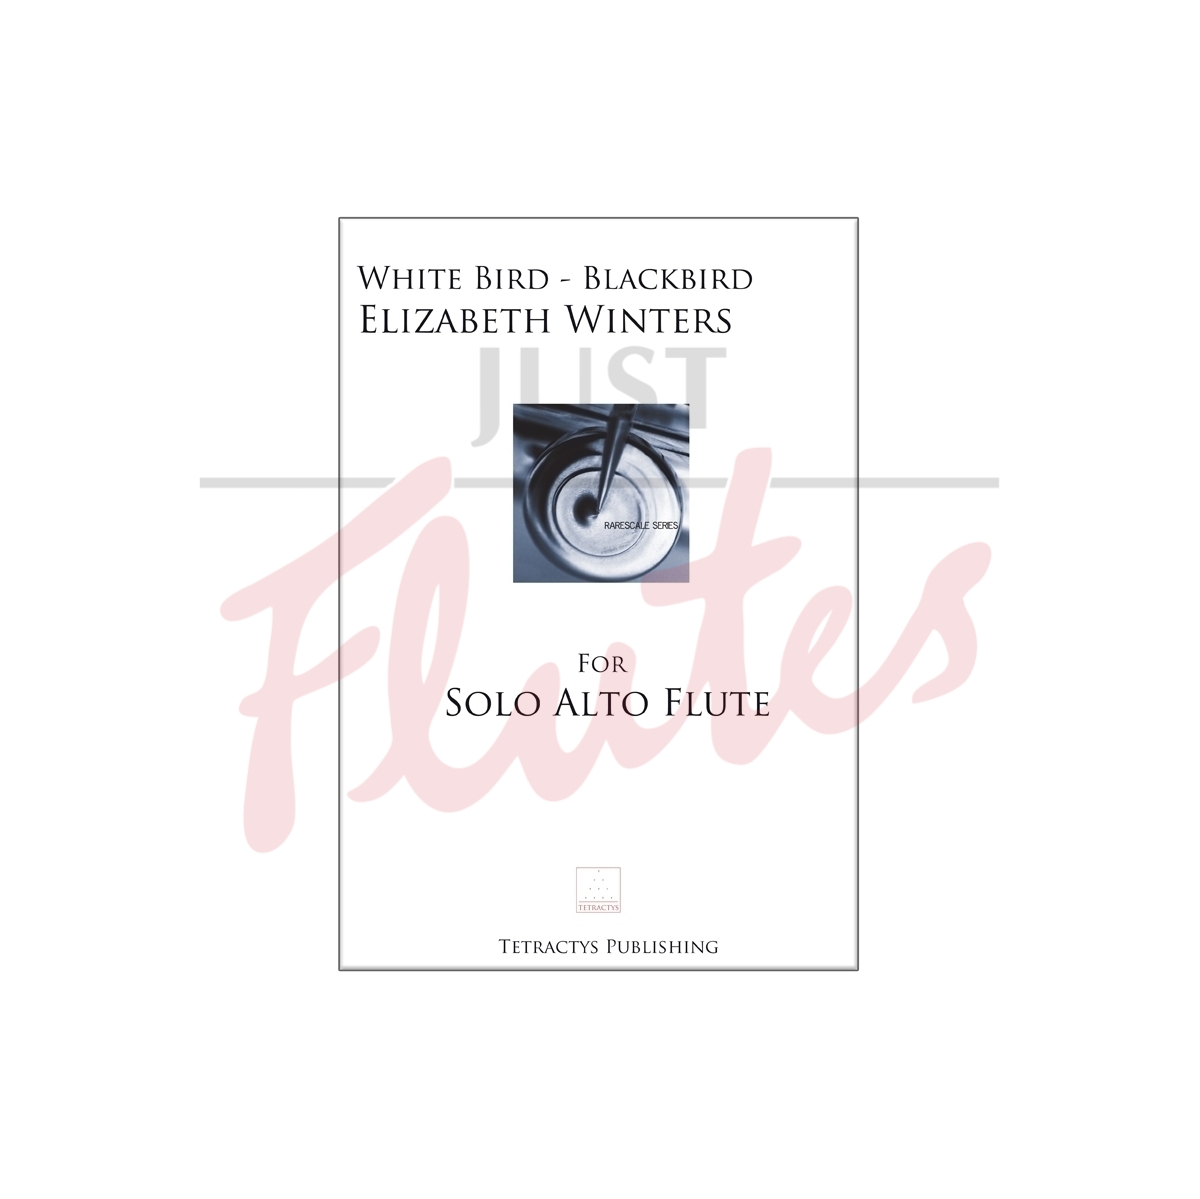 White Bird - Blackbird for Solo Alto Flute